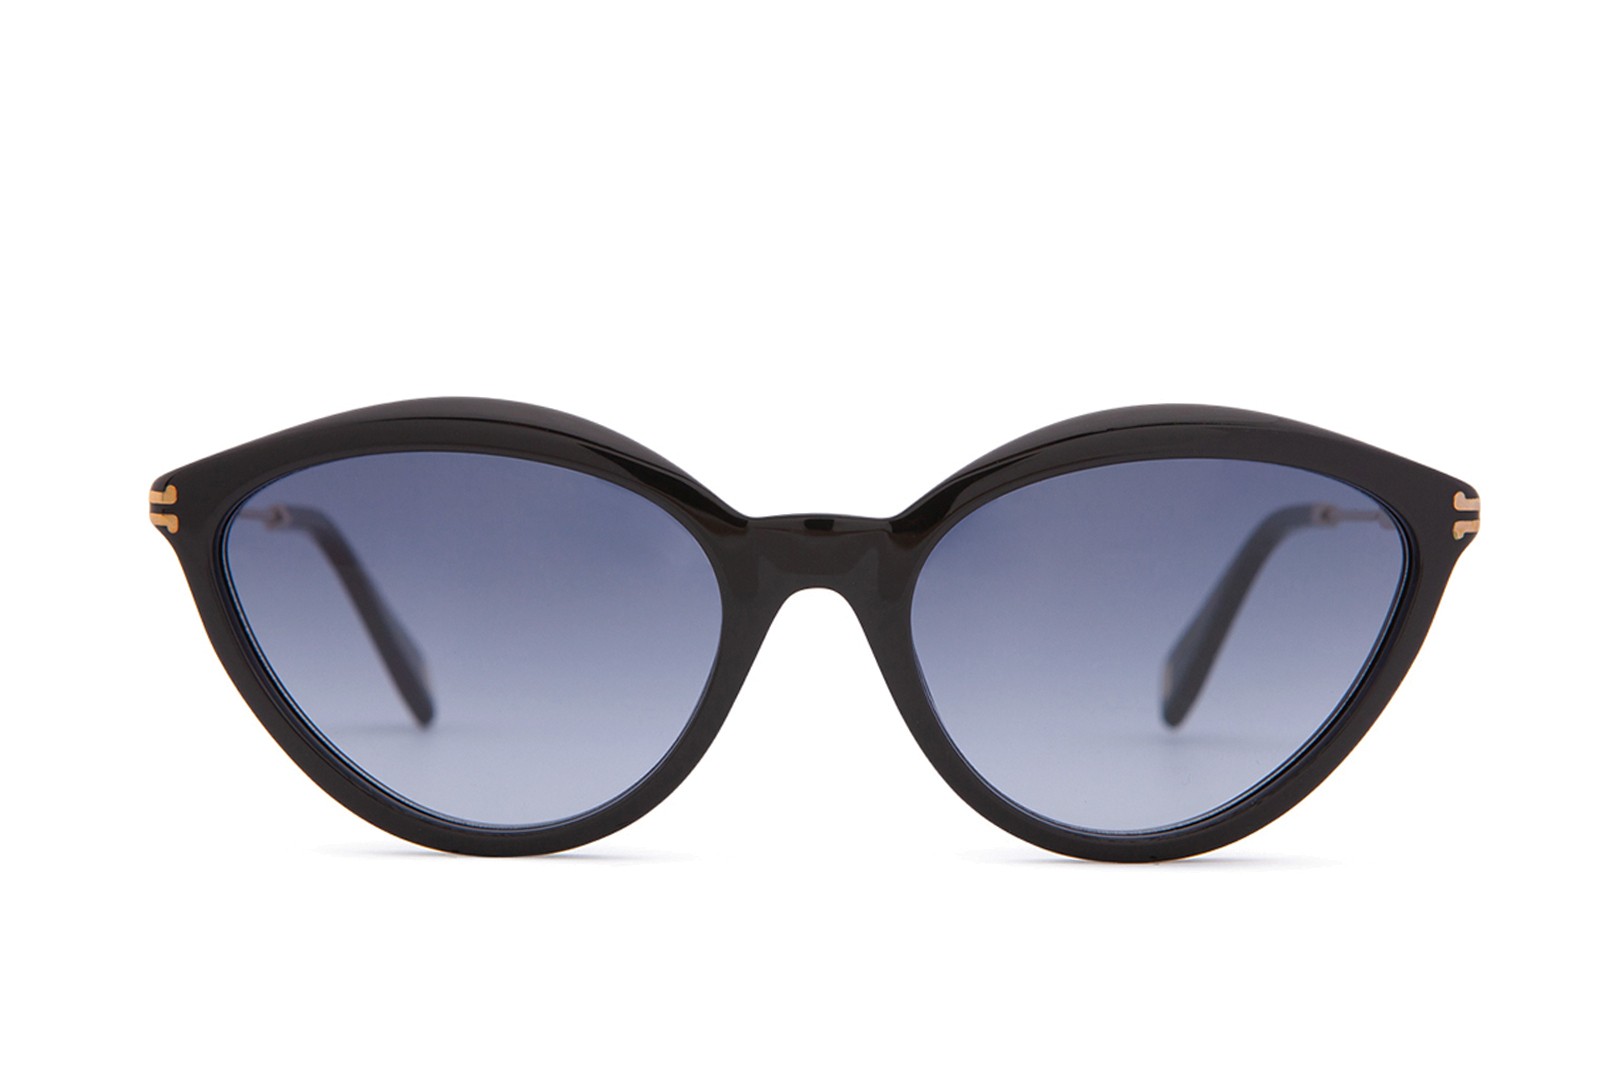 This item is unavailable -   Accessori per occhiali, Occhiali da  vista, Regali unici